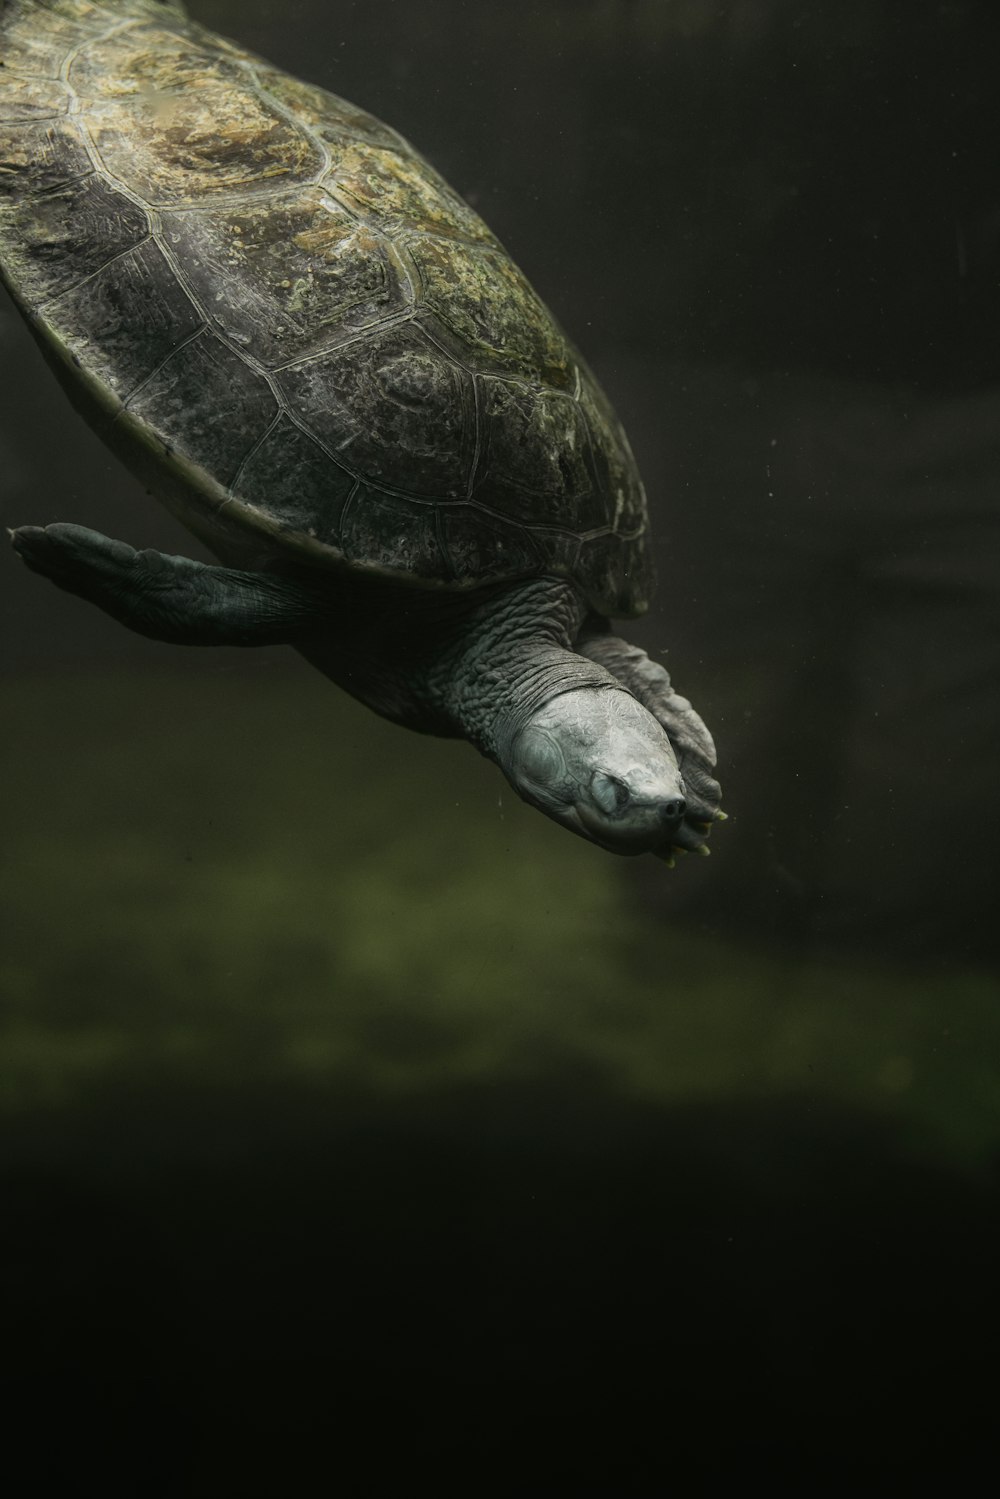 Una gran tortuga nadando en el agua